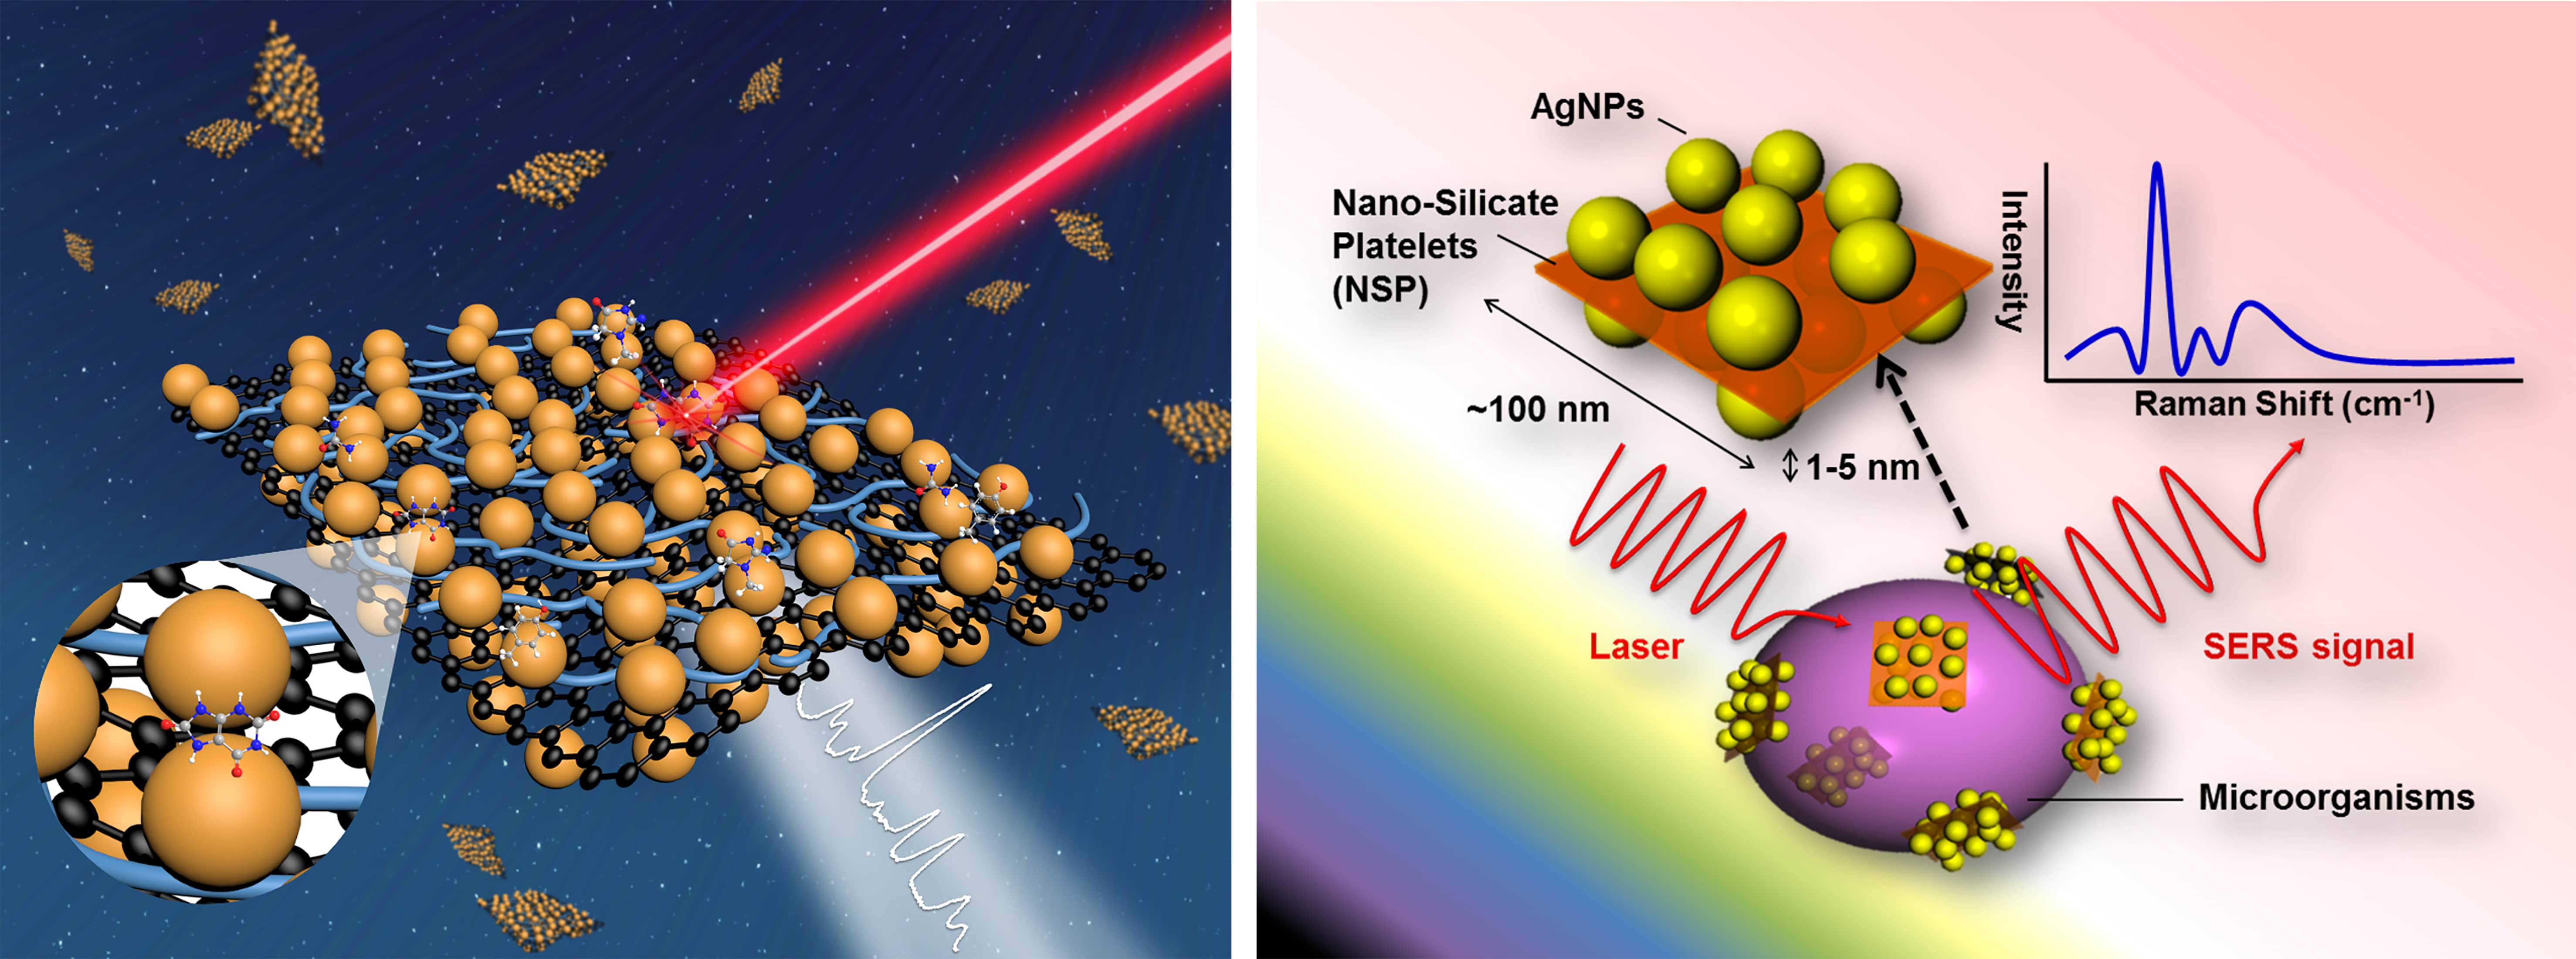 磁性二維金屬奈米粒子陣列之表面增強拉曼光譜 (SERS)檢測平台於環境-生醫感測之應用